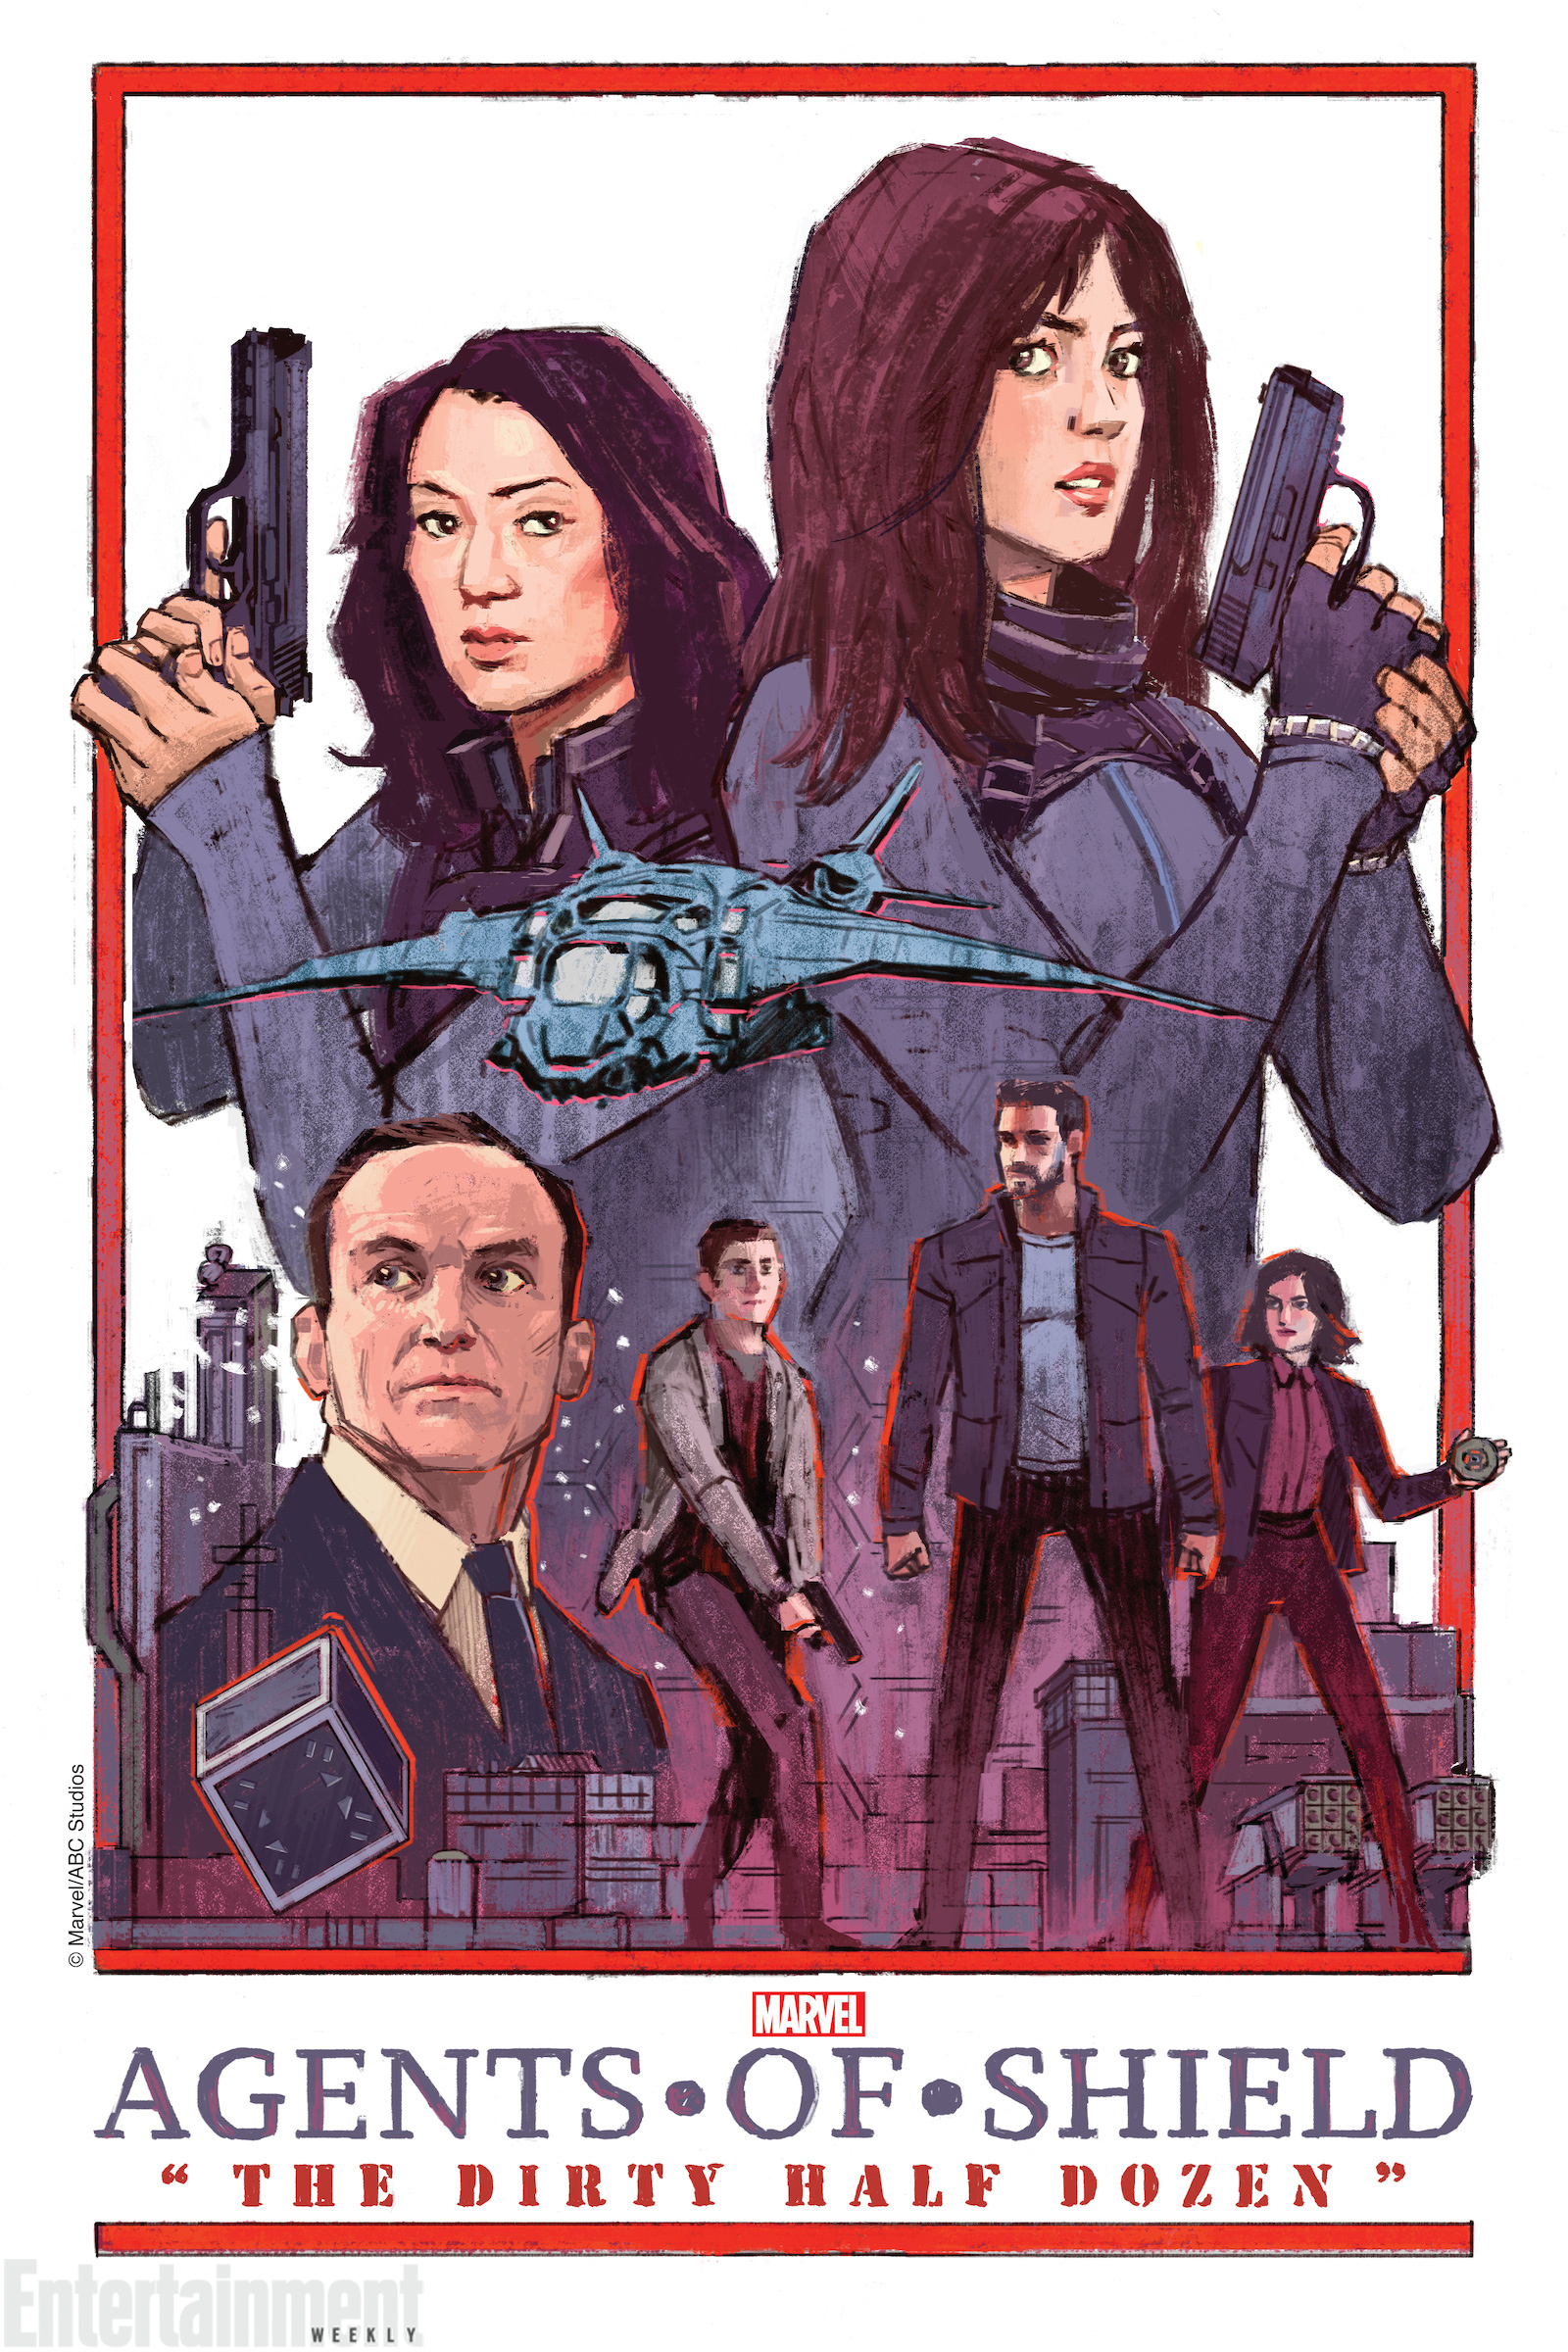 Agents of S.H.I.E.L.D. (season 3) - Wikipedia